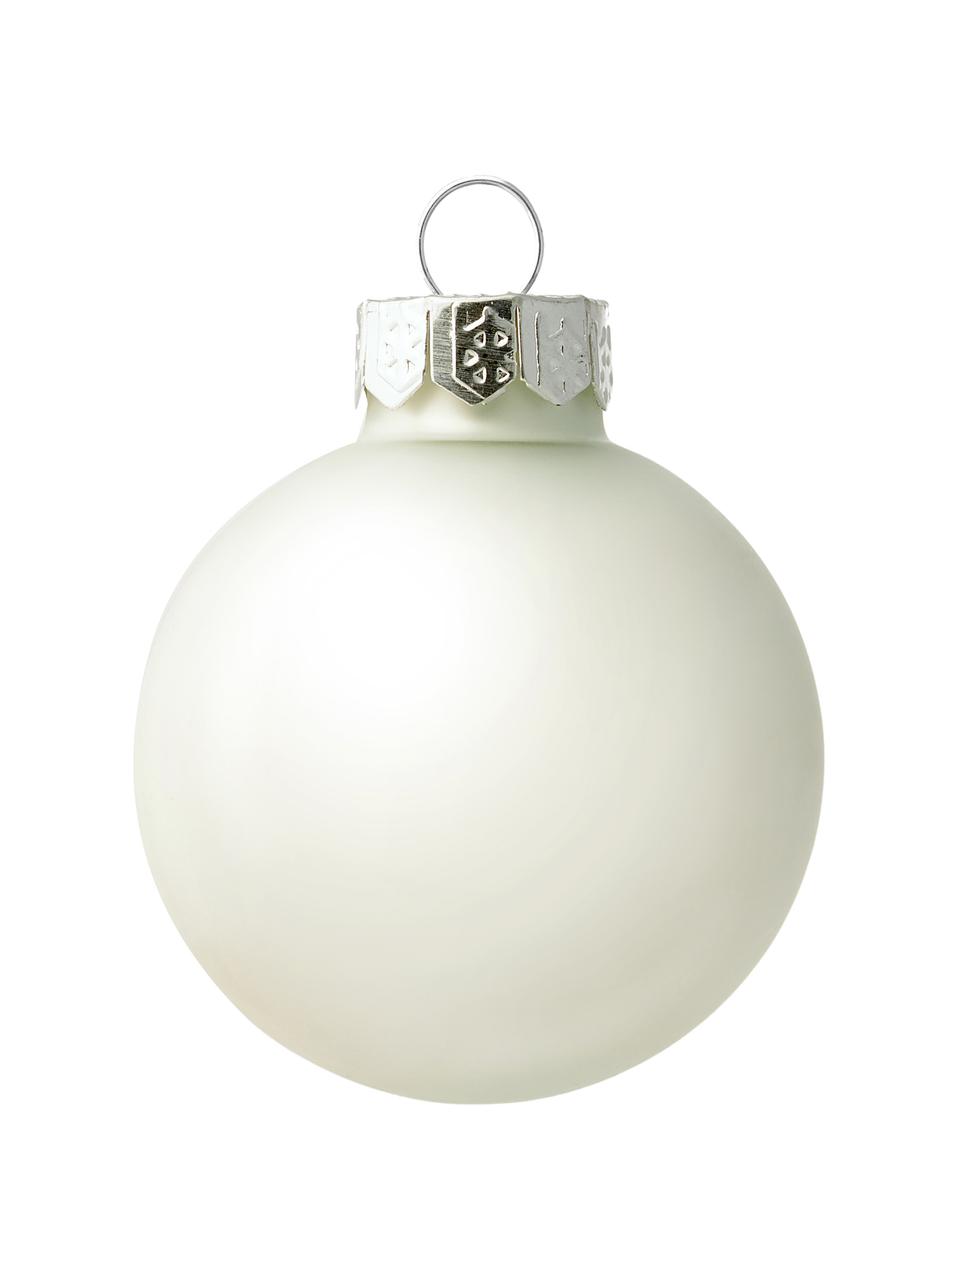 Sada vánočních ozdob Evergreen, 16 dílů, Bílá, Ø 4 cm, 16 ks